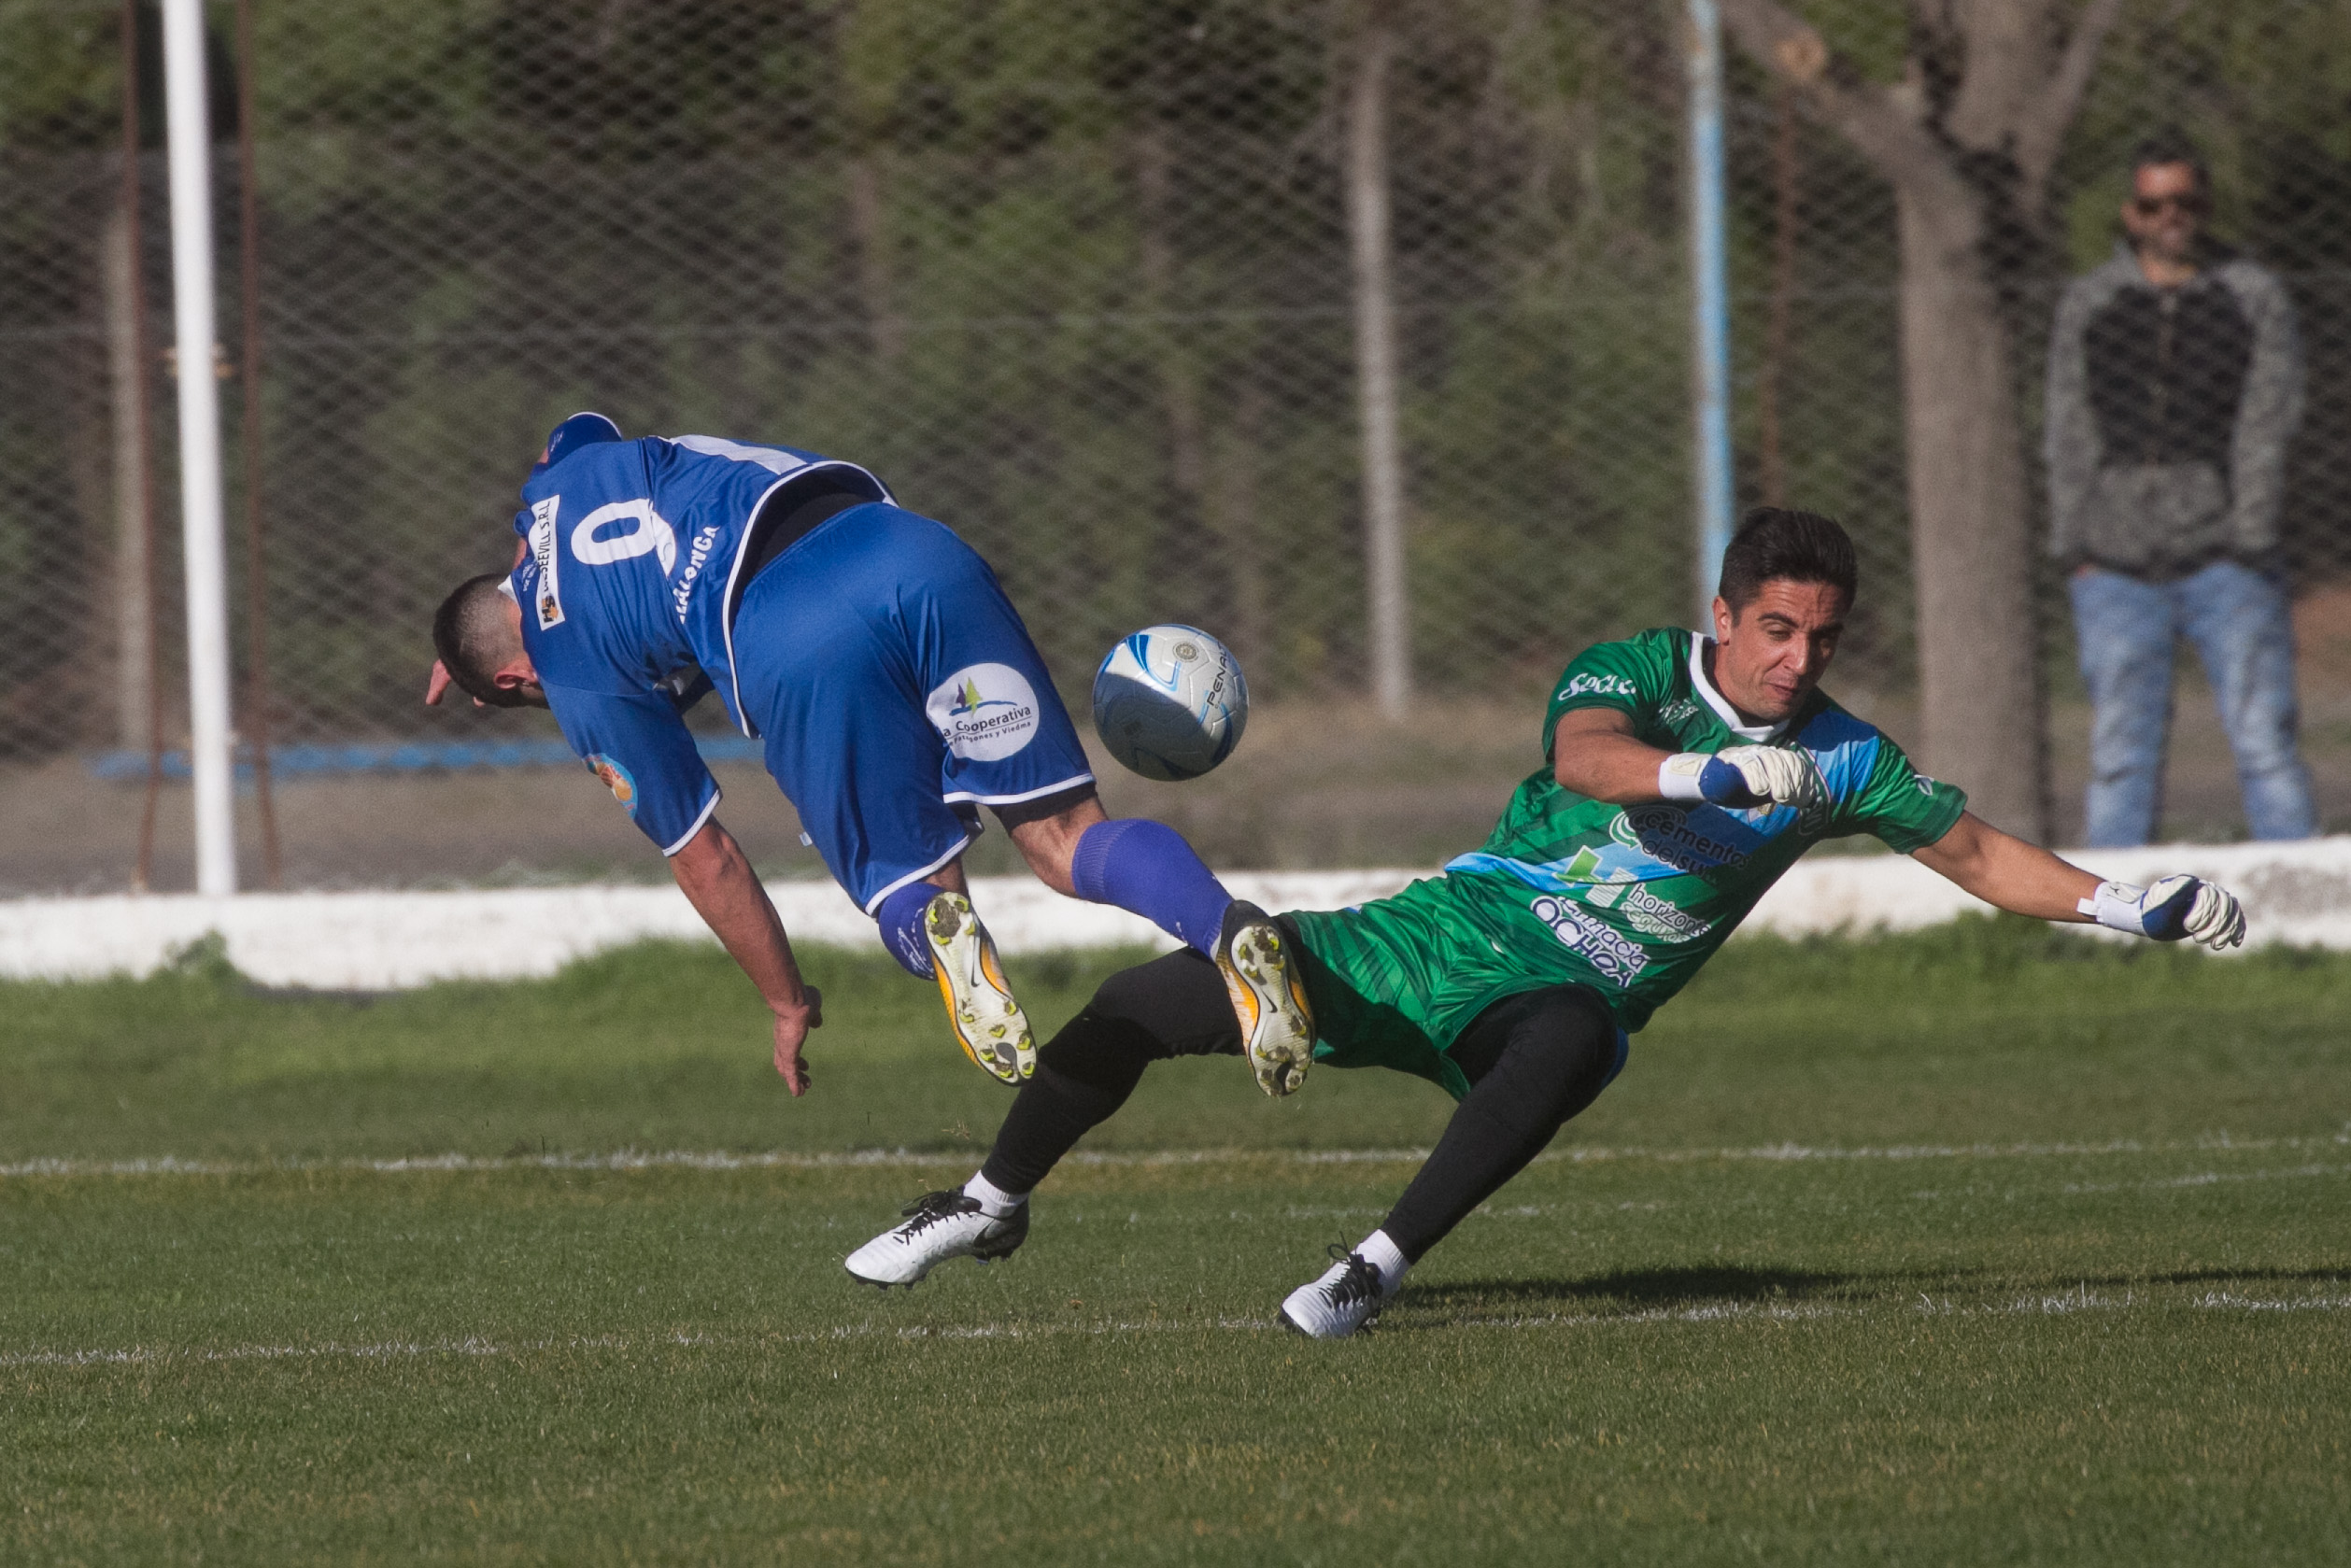 Sol de Mayo y Villalonga disputaron la final del torneo pasado. El equipo viedmense fue el campeón. Foto: Pablo Leguizamon.